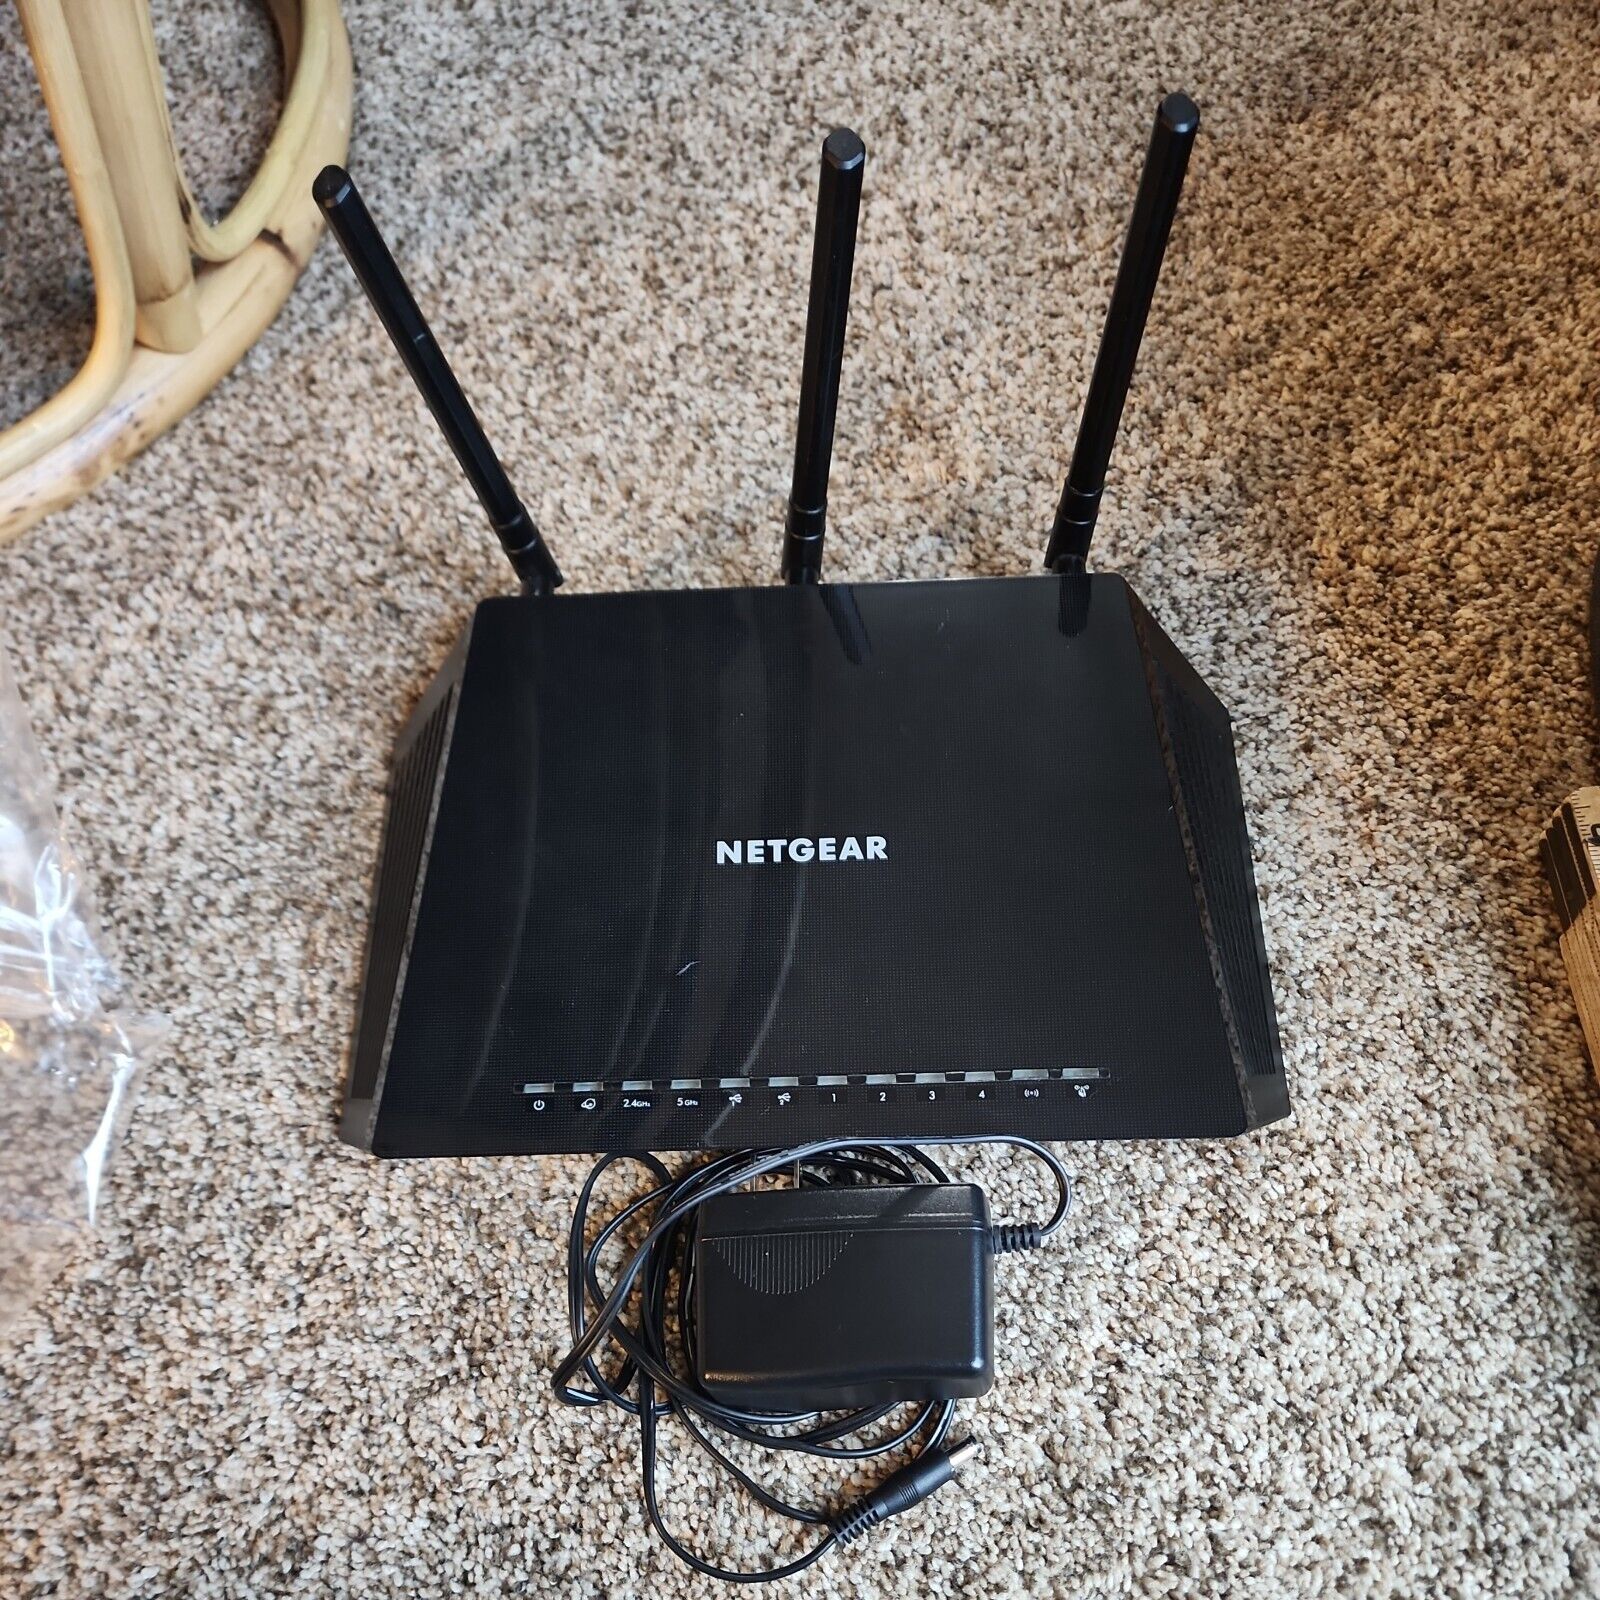 Netgear AC1750 smart WiFi Router R6400